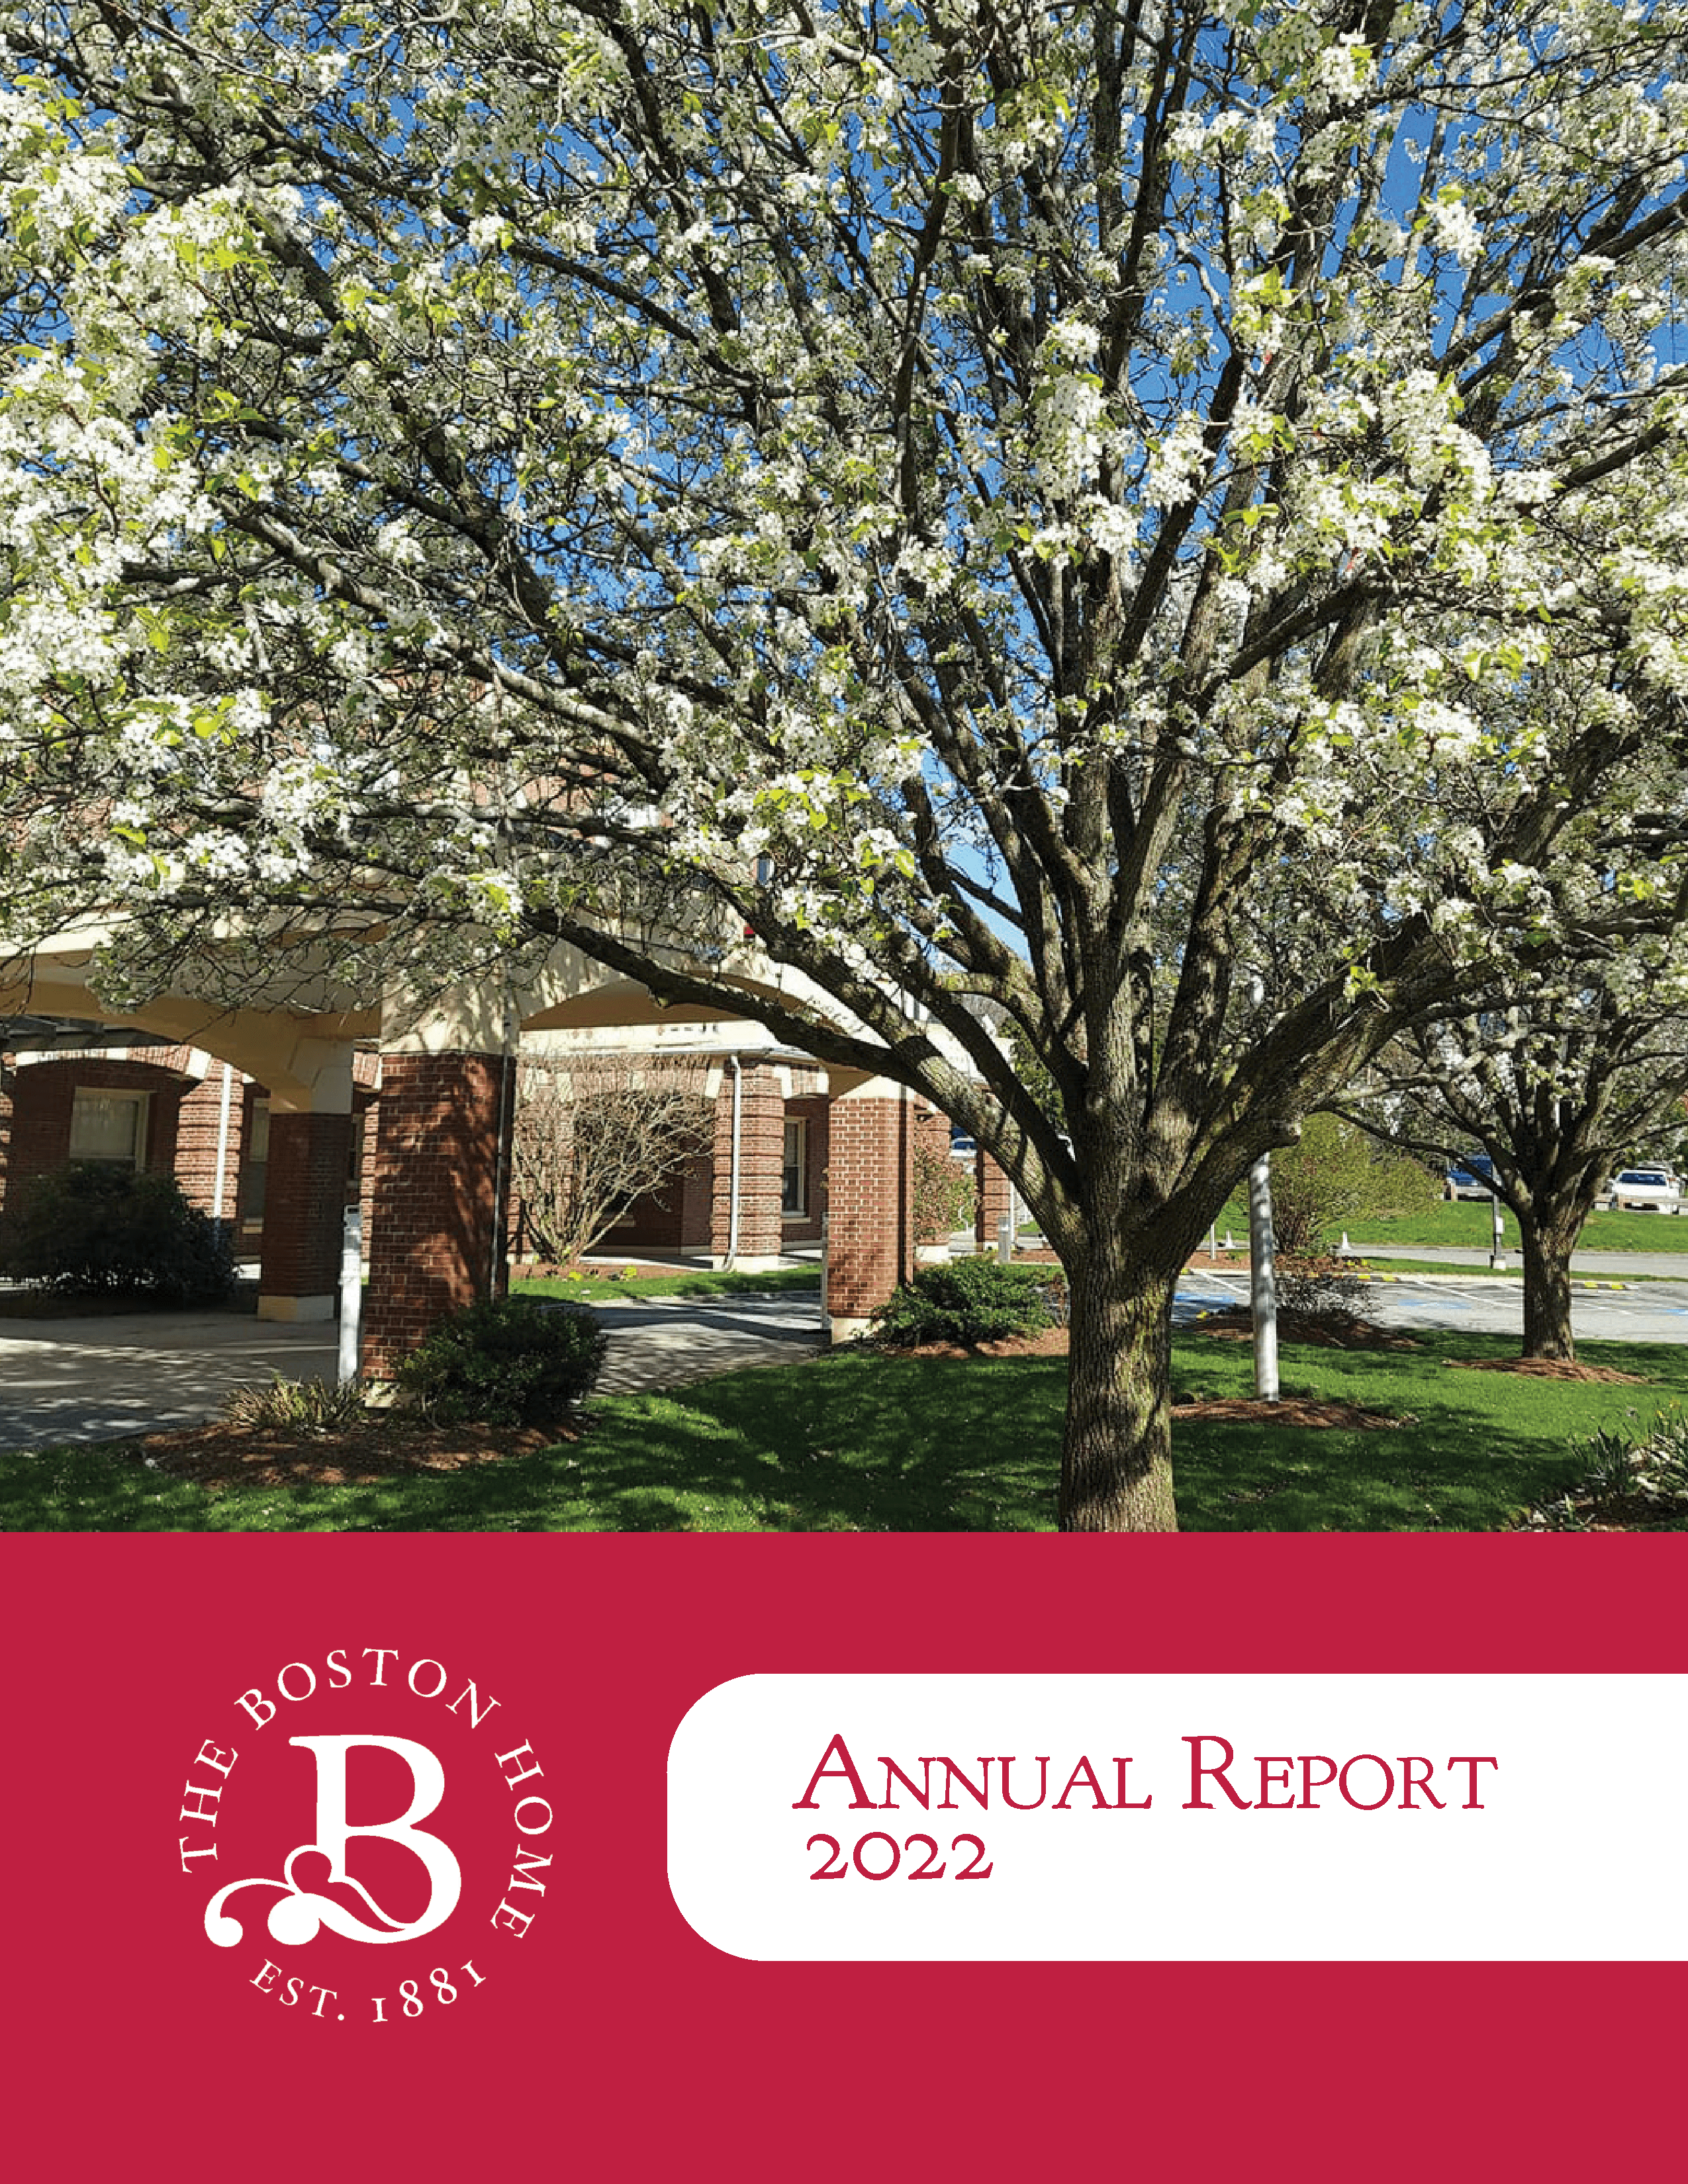 The Boston Home Annual Report 2022